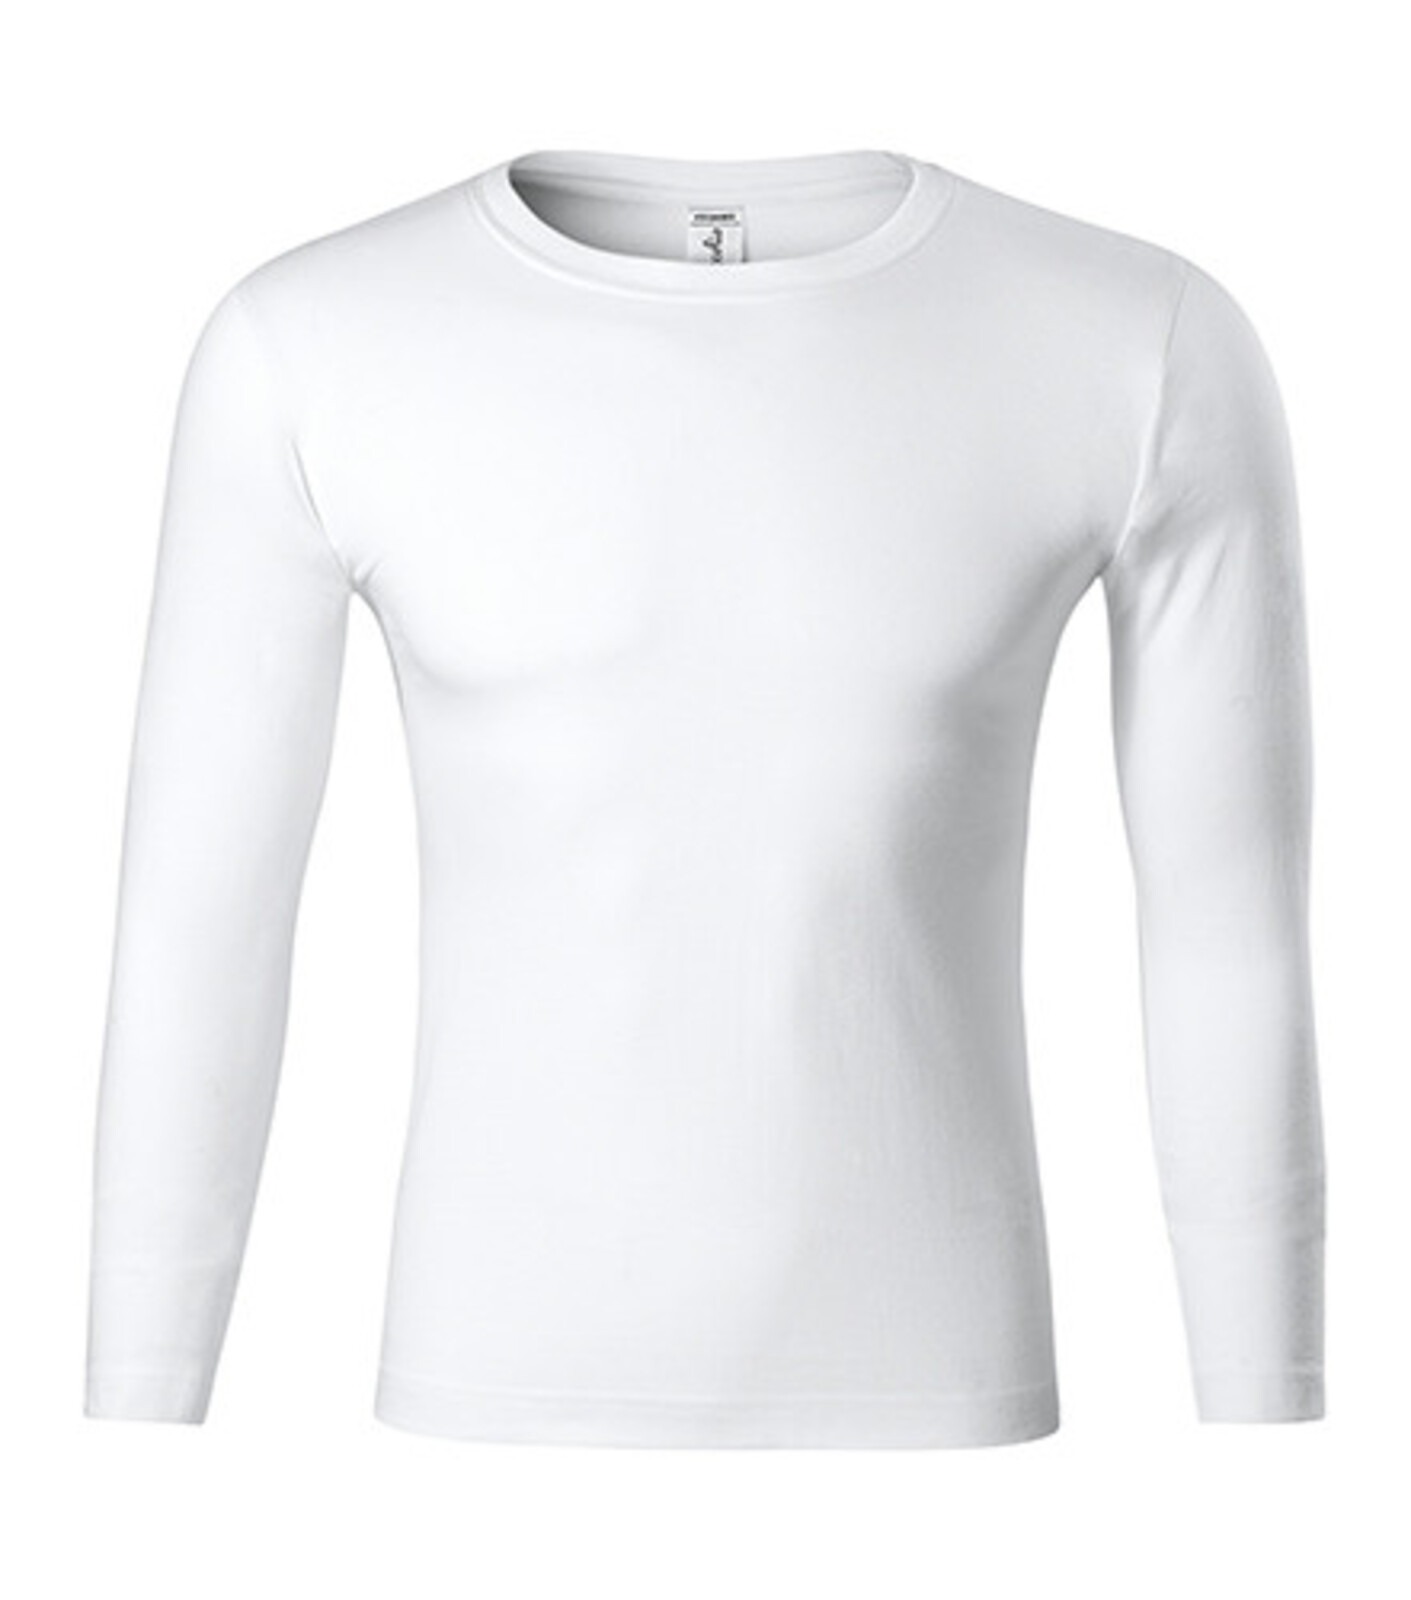 Unisex tričko s dlhým rukávom Progress LS P75 - veľkosť: 3XL, farba: biela